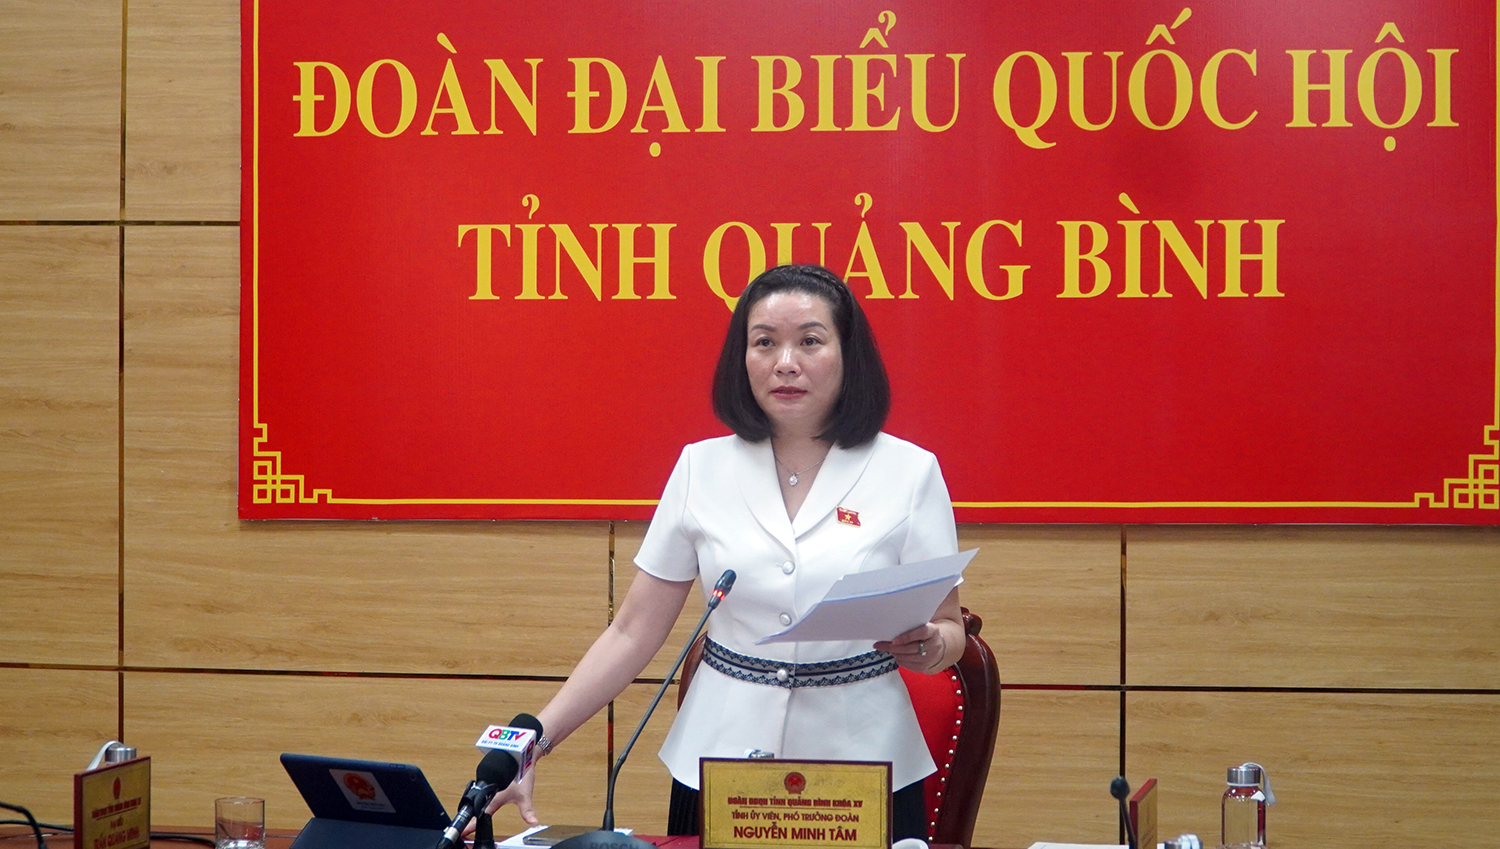 Đại biểu Quốc hội Nguyễn Minh Tâm chất vấn nhóm vấn đề về lĩnh vực tòa án